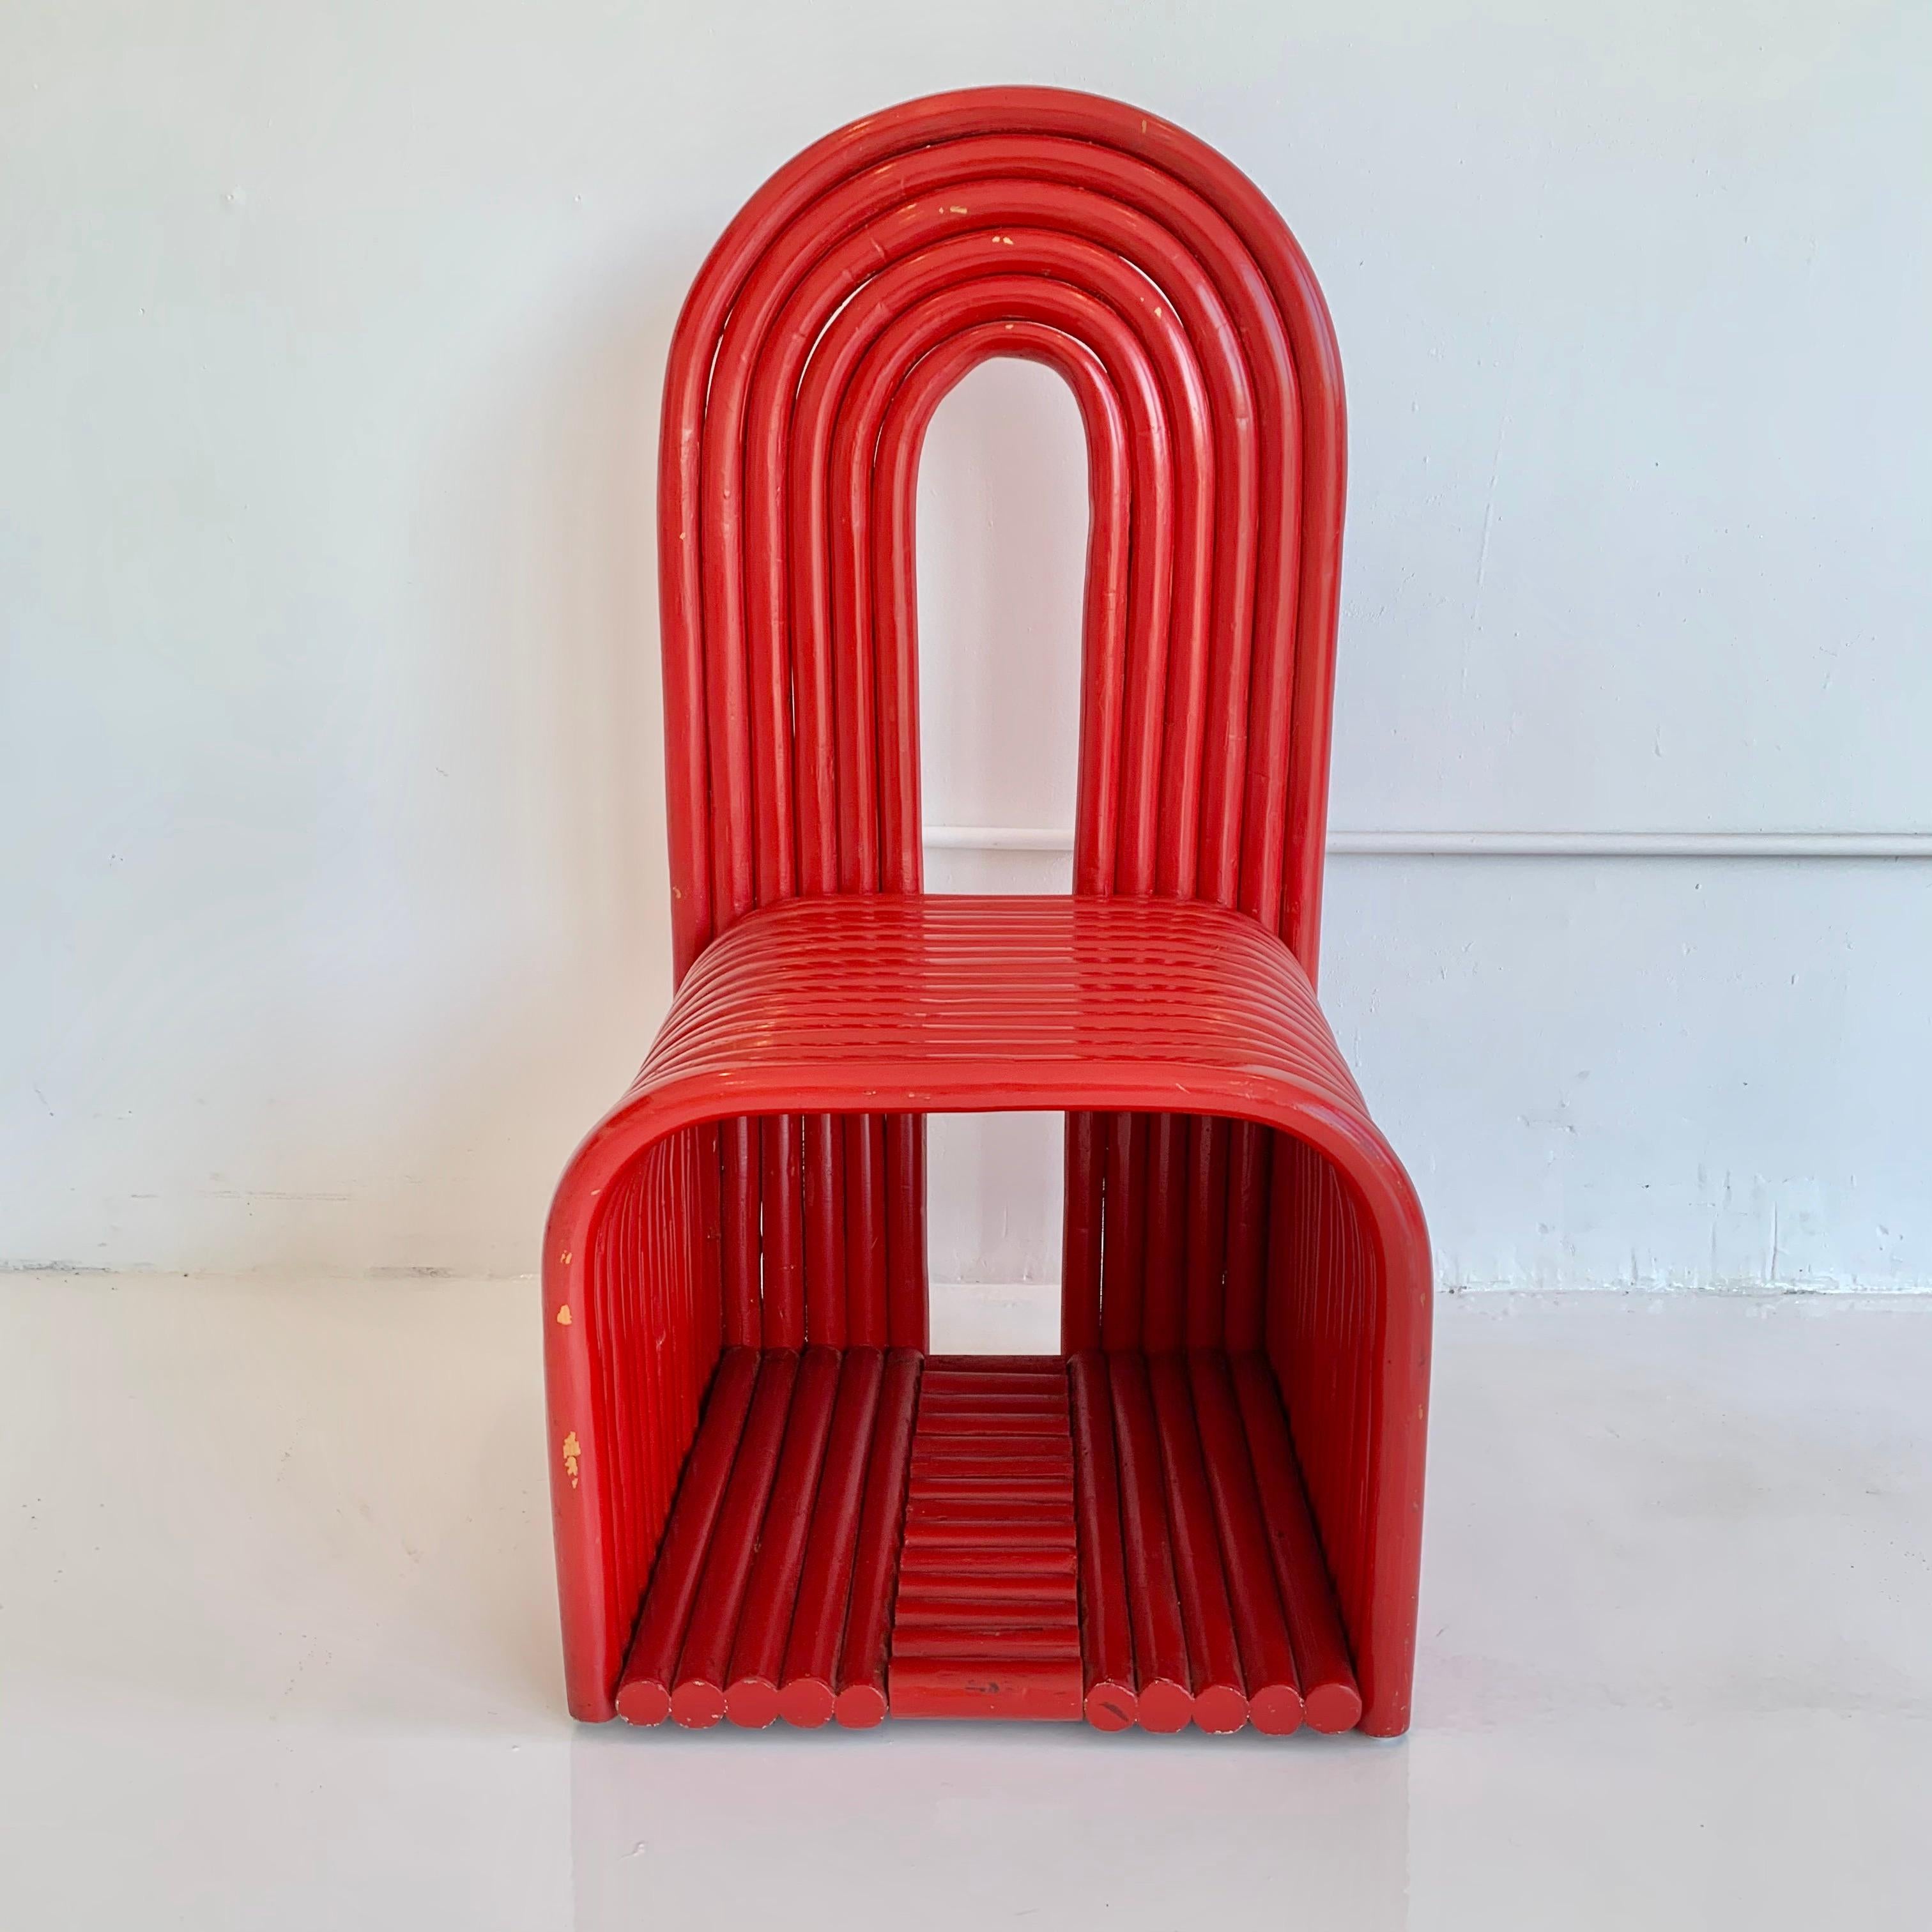 Wunderschöner Bugholzstuhl in Rot. Klassischer Stuhl im Memphis-Stil mit Schlüsselloch-Rückenlehne. Schwer und gut verarbeitet. Einige Verluste/Abnutzungen an der Farbe. Hervorragender, freistehender Akzentstuhl.